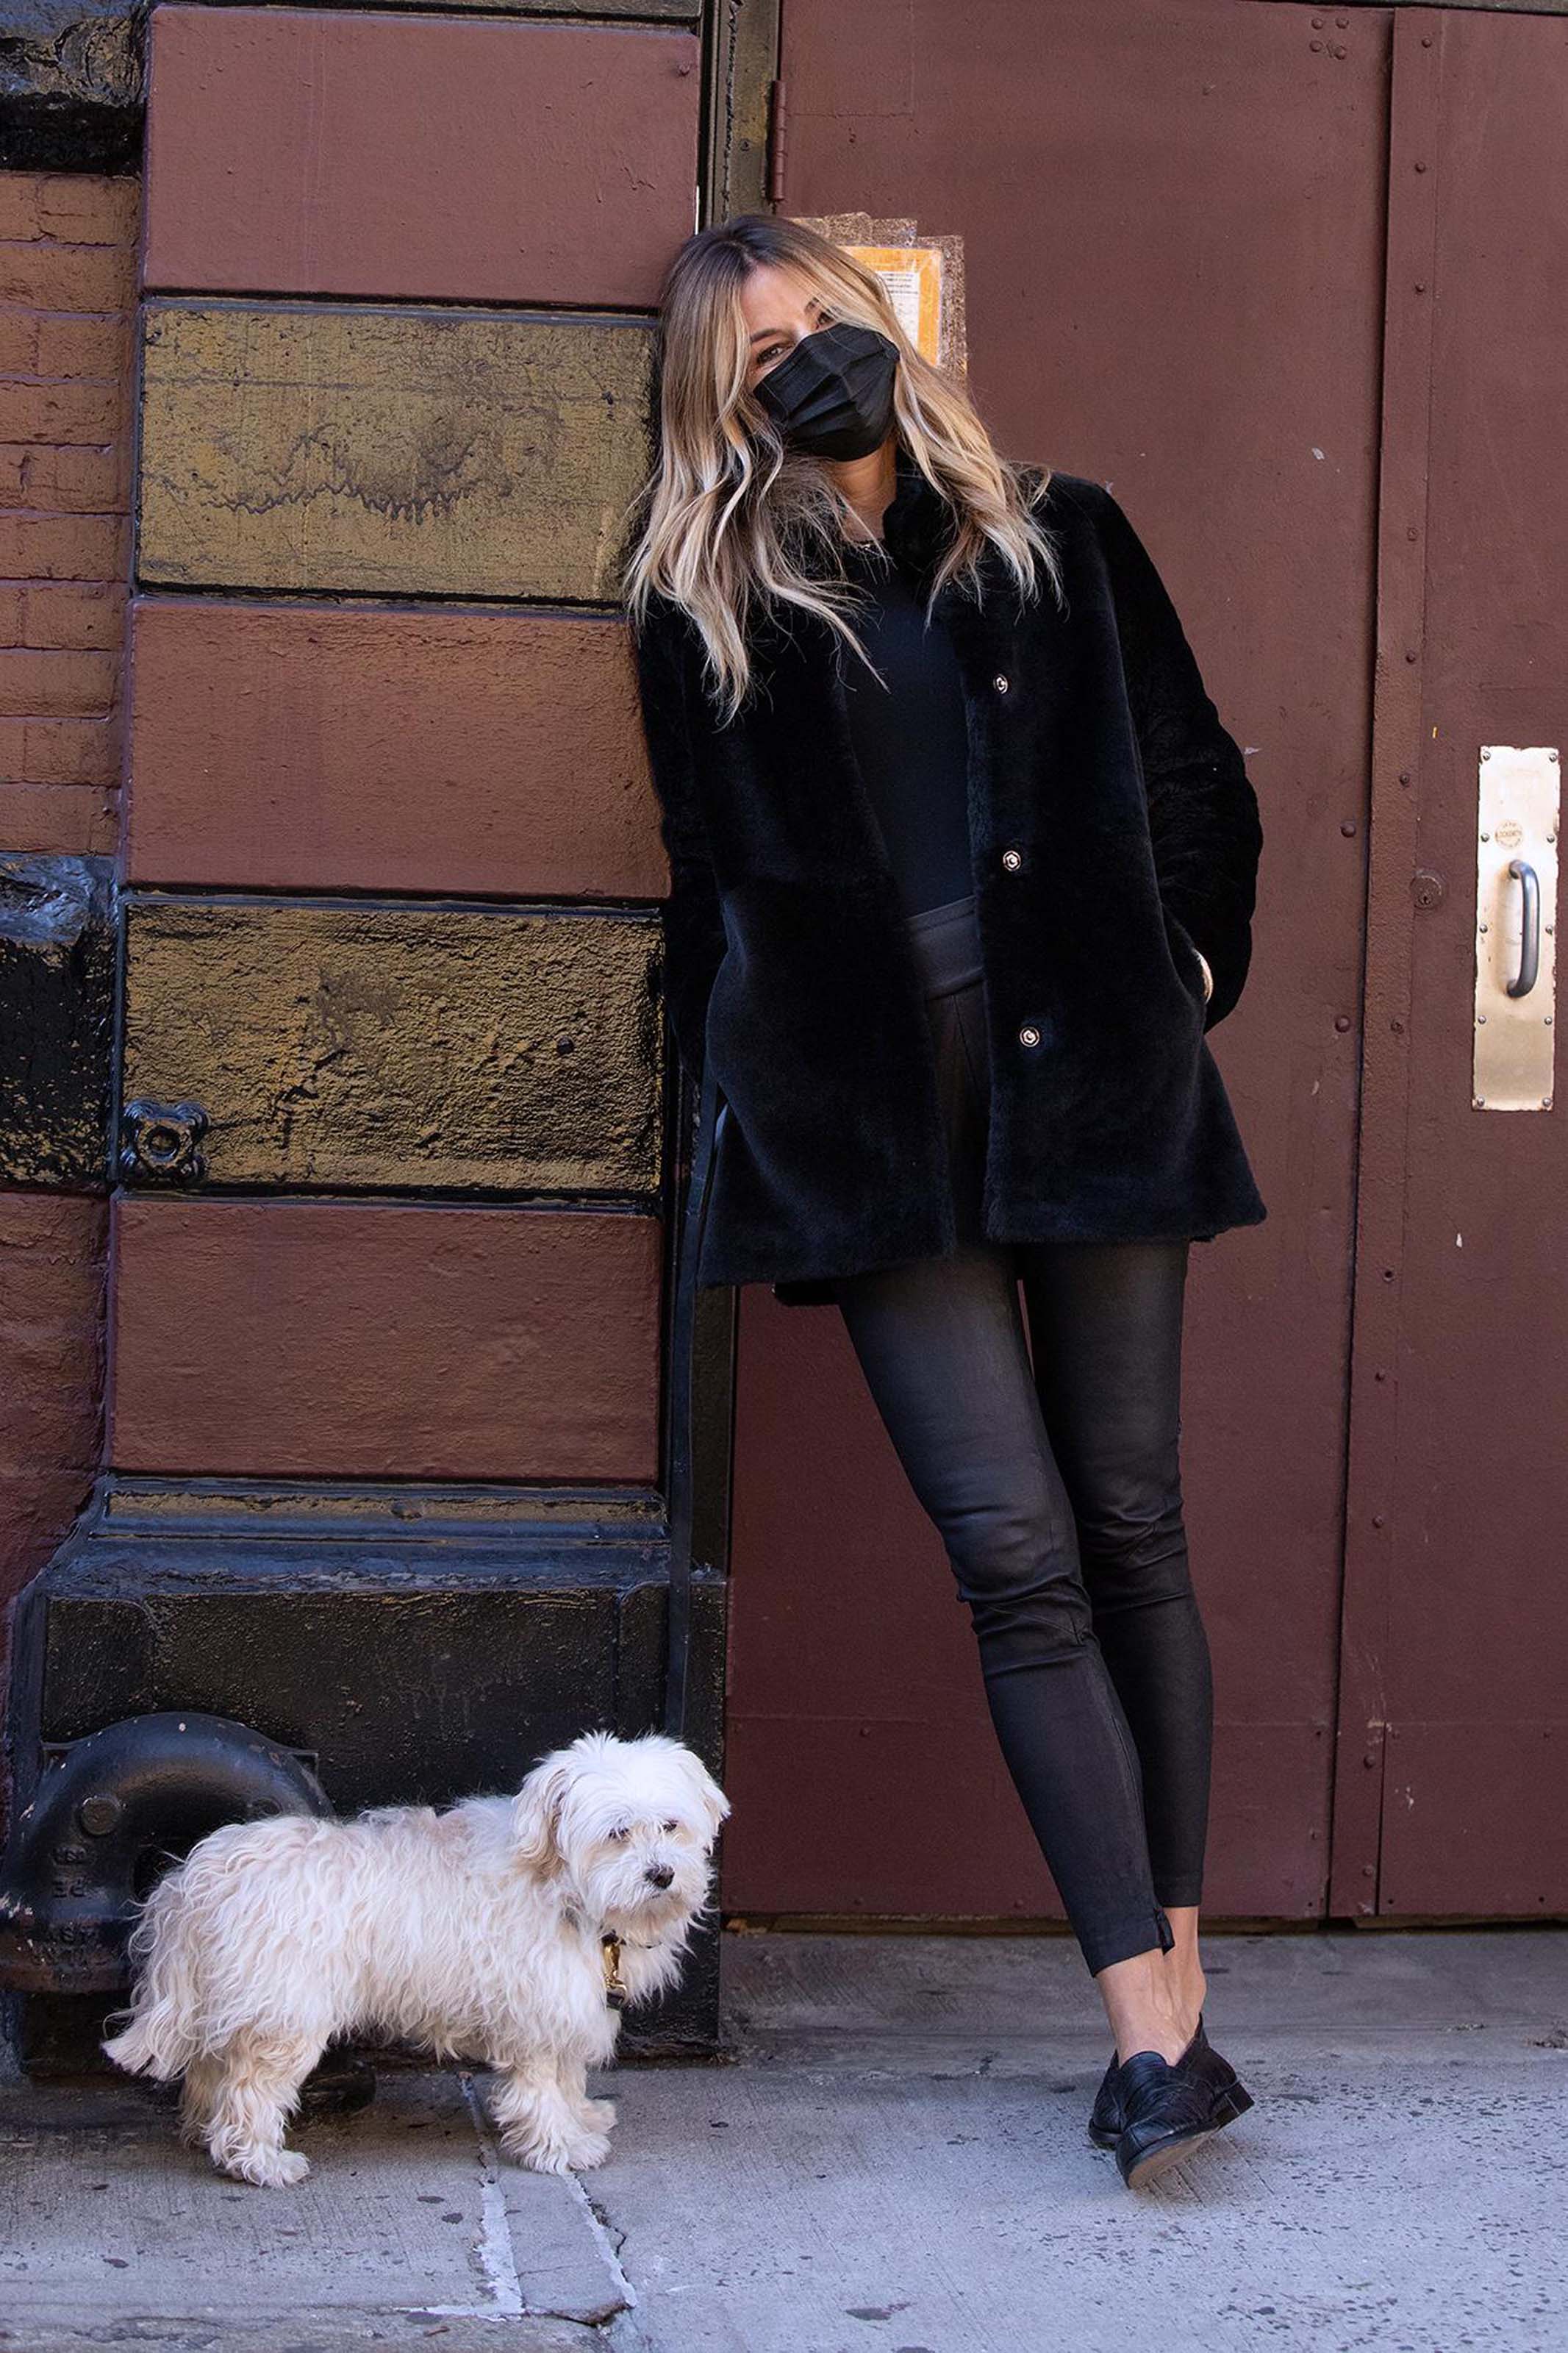 Kelly Killoren Bensimon walking her dog in New York